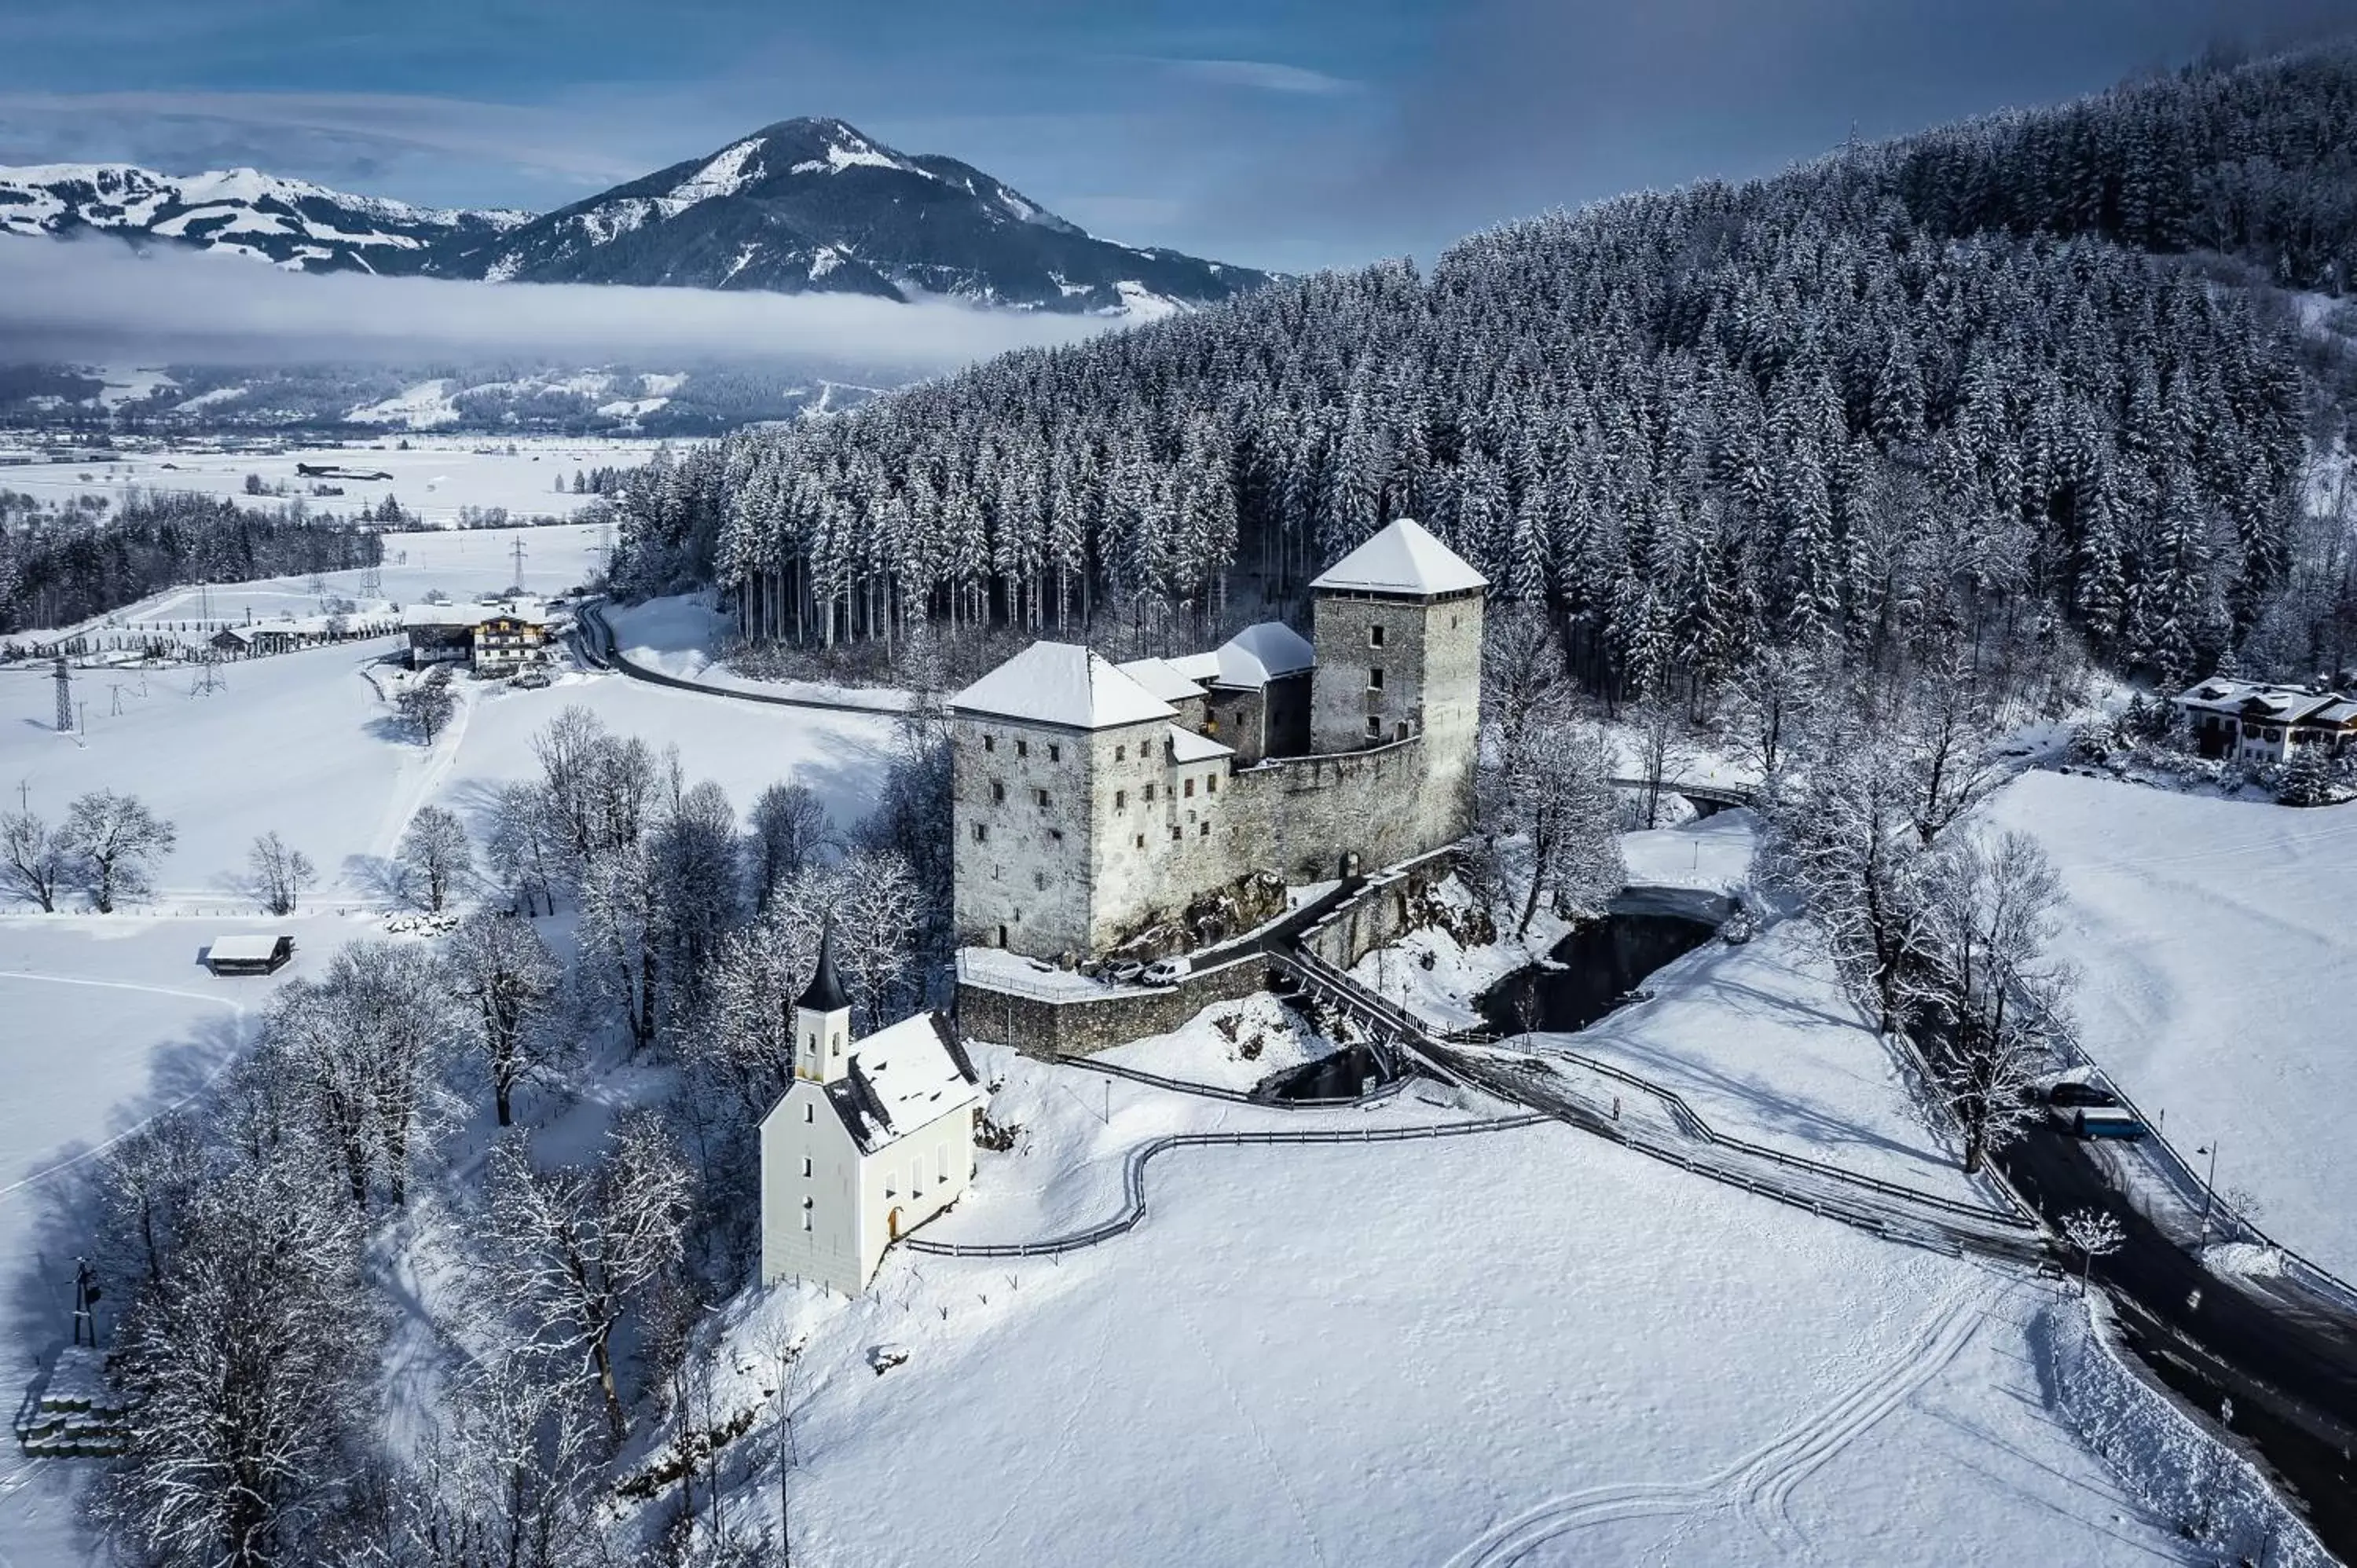 Nearby landmark, Winter in Hotel TONI inklusive Zell am See - Kaprun Sommerkarte